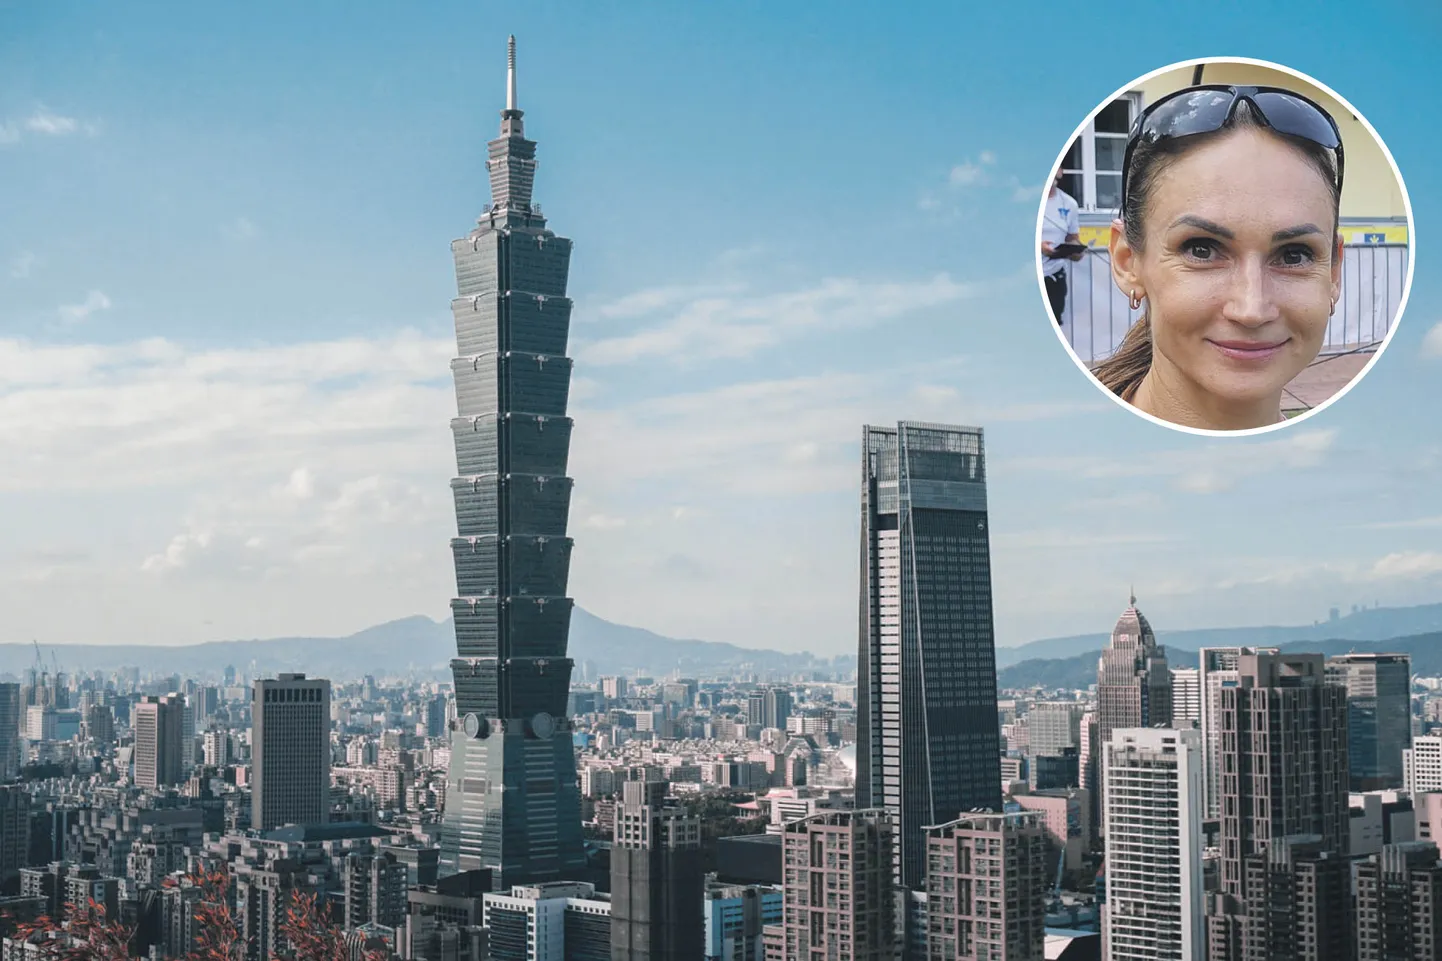 Kaisa Kukk võitis trepijooksu maailmameistrivõistluste pronksmedali Taipeis, kus joosti kuni 2007. aastani maailma kõrgeima pilvelõhkuja 91. korrusele ja siis teist korda veel 59. korrusele.